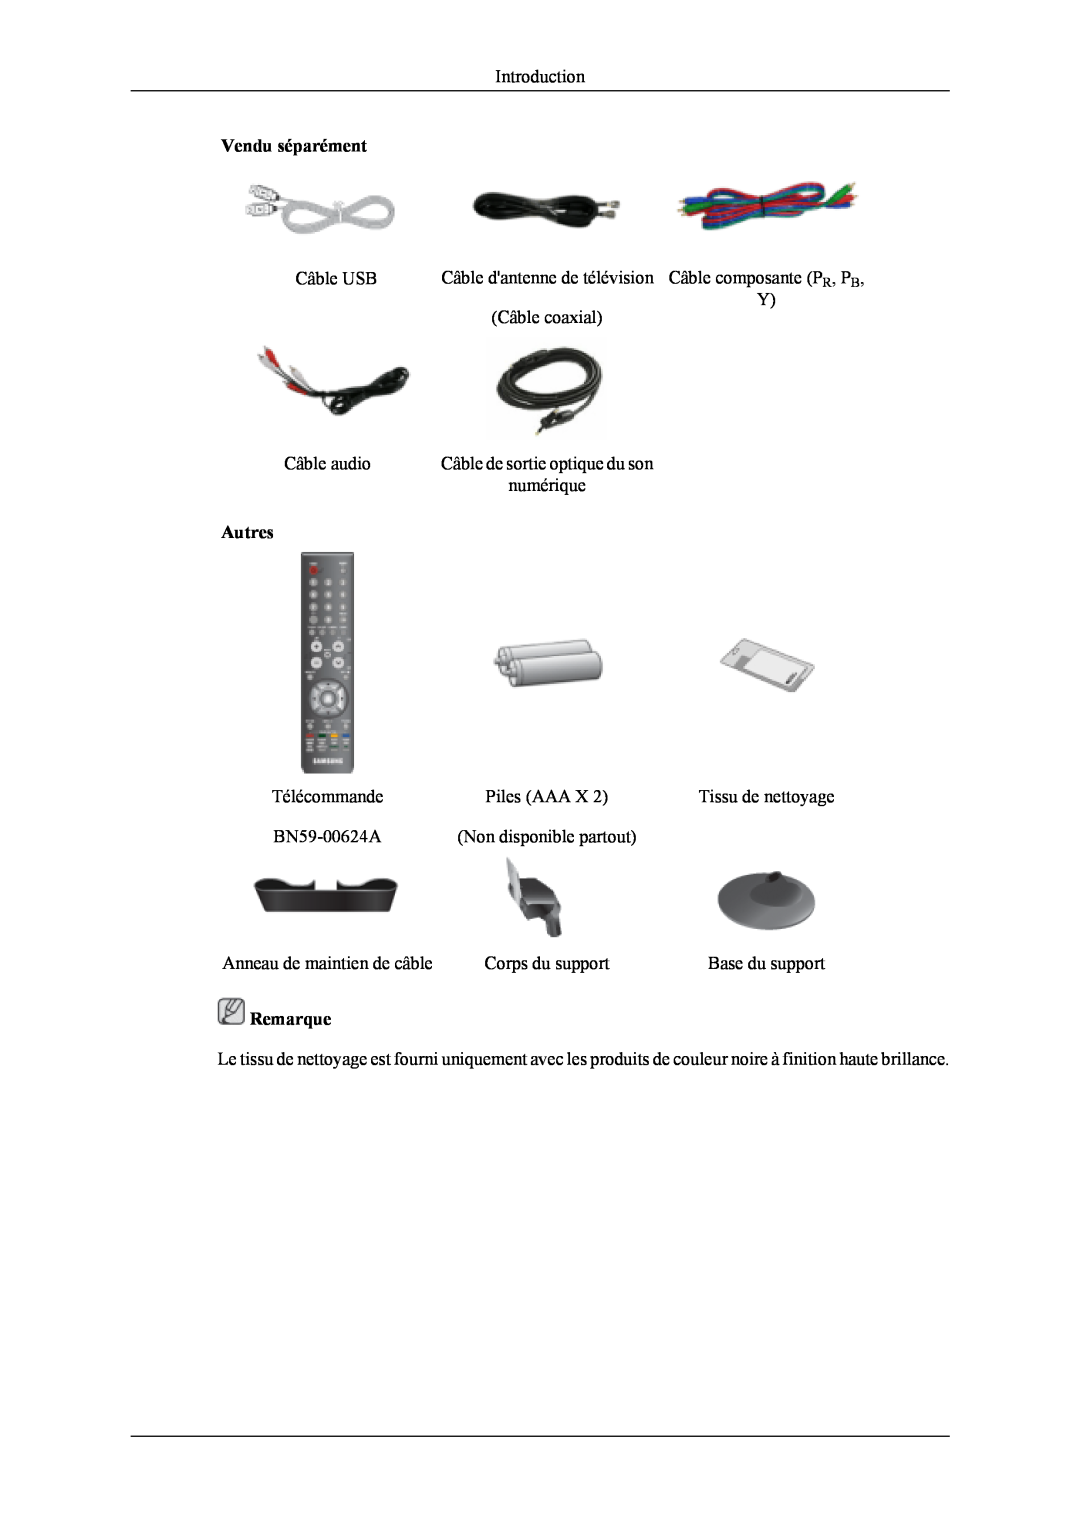 Samsung LS22TDDSUV/EN manual Autres, Vendu séparément, Remarque, Câble de sortie optique du son, Tissu de nettoyage 